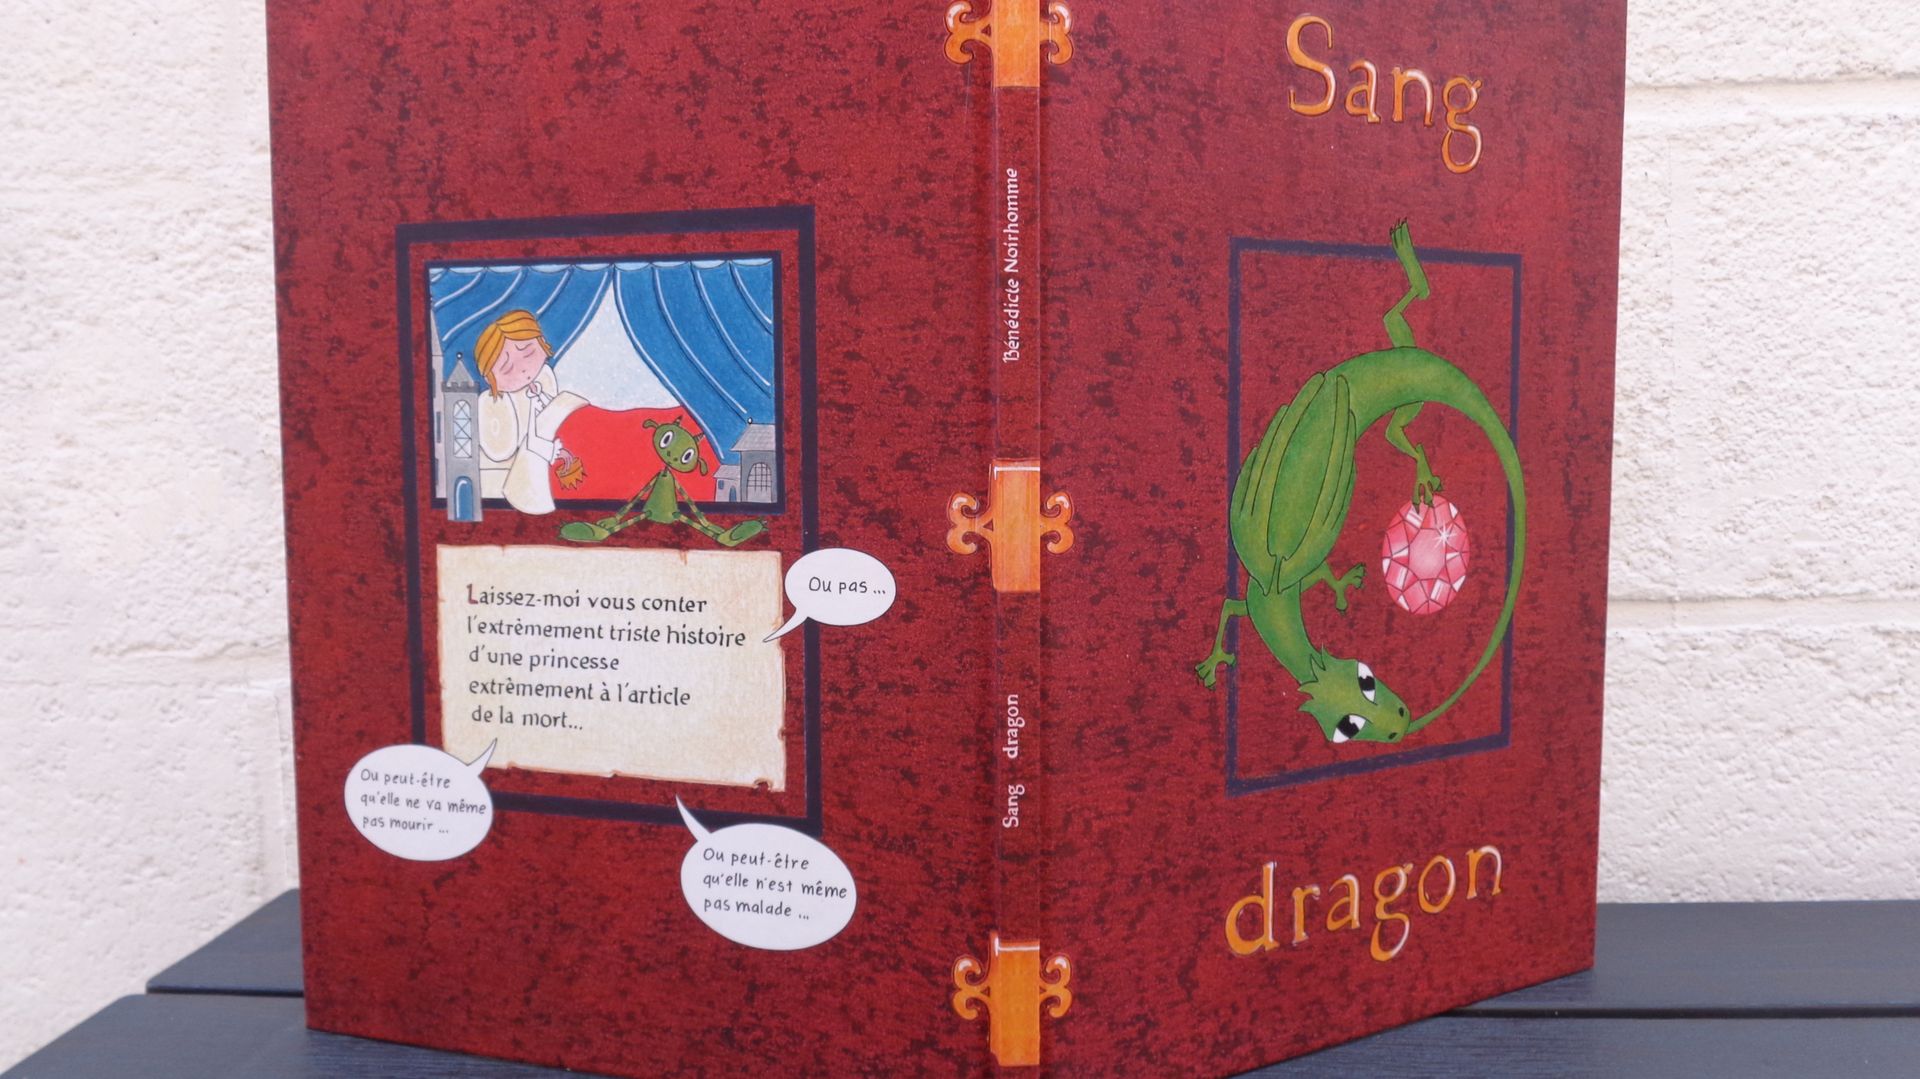 "Sang-Dragon" le livre écrit par Bénédicte Noirhomme pendant le confinement